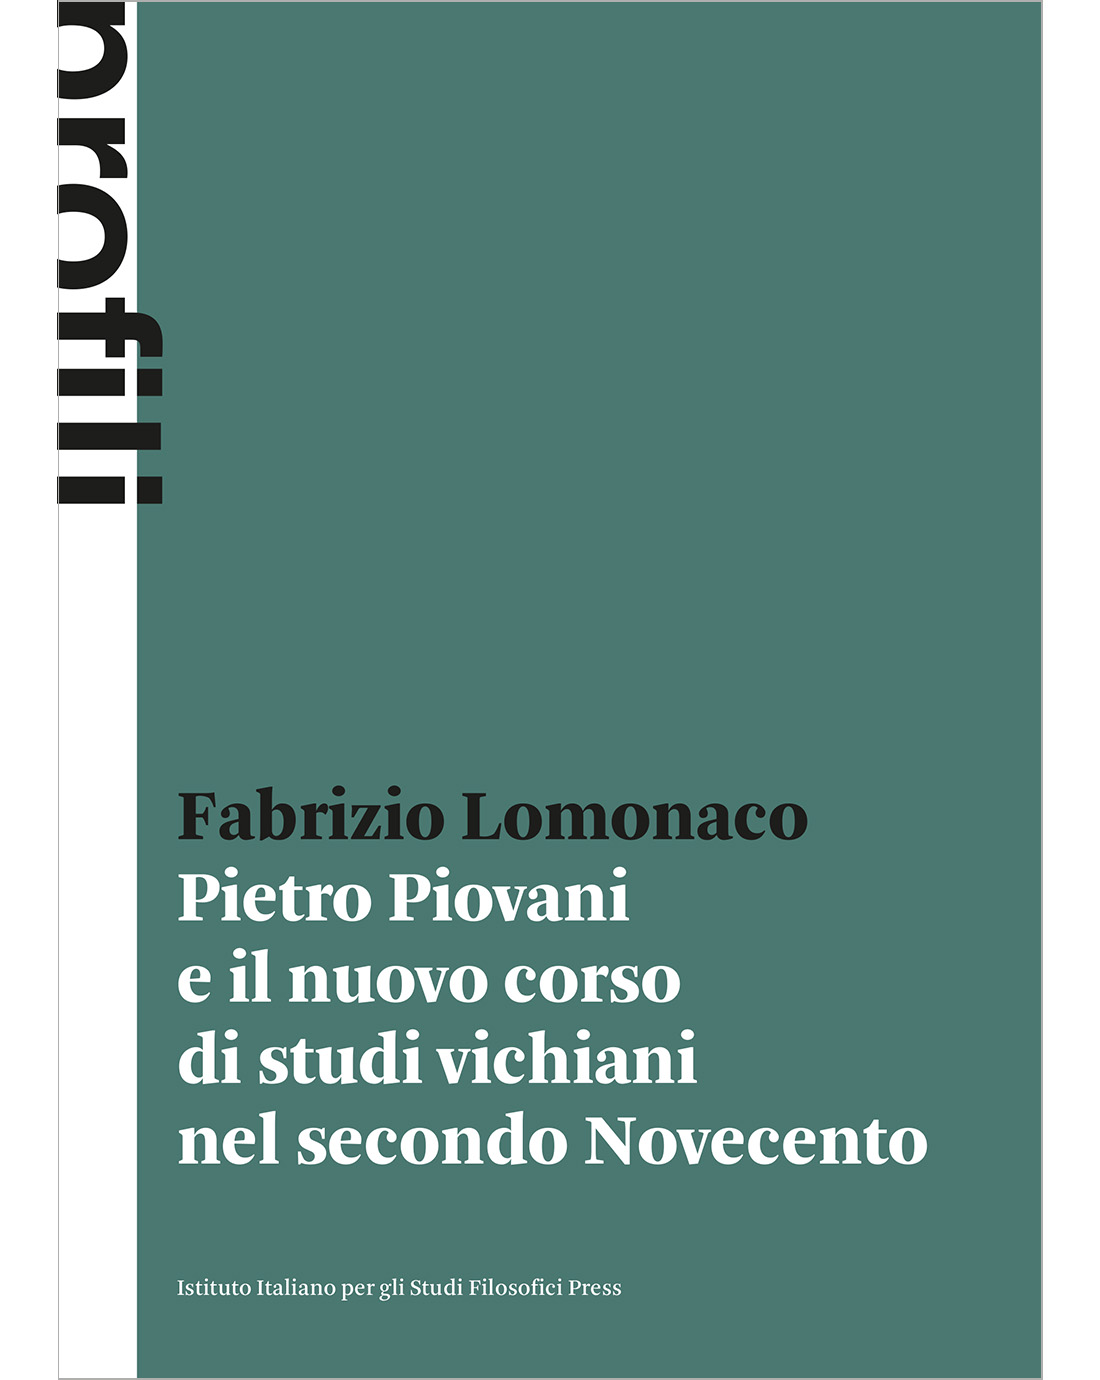 Pietro Piovani e il nuovo corso di studi vichiani nel secondo Novecento (e-book)